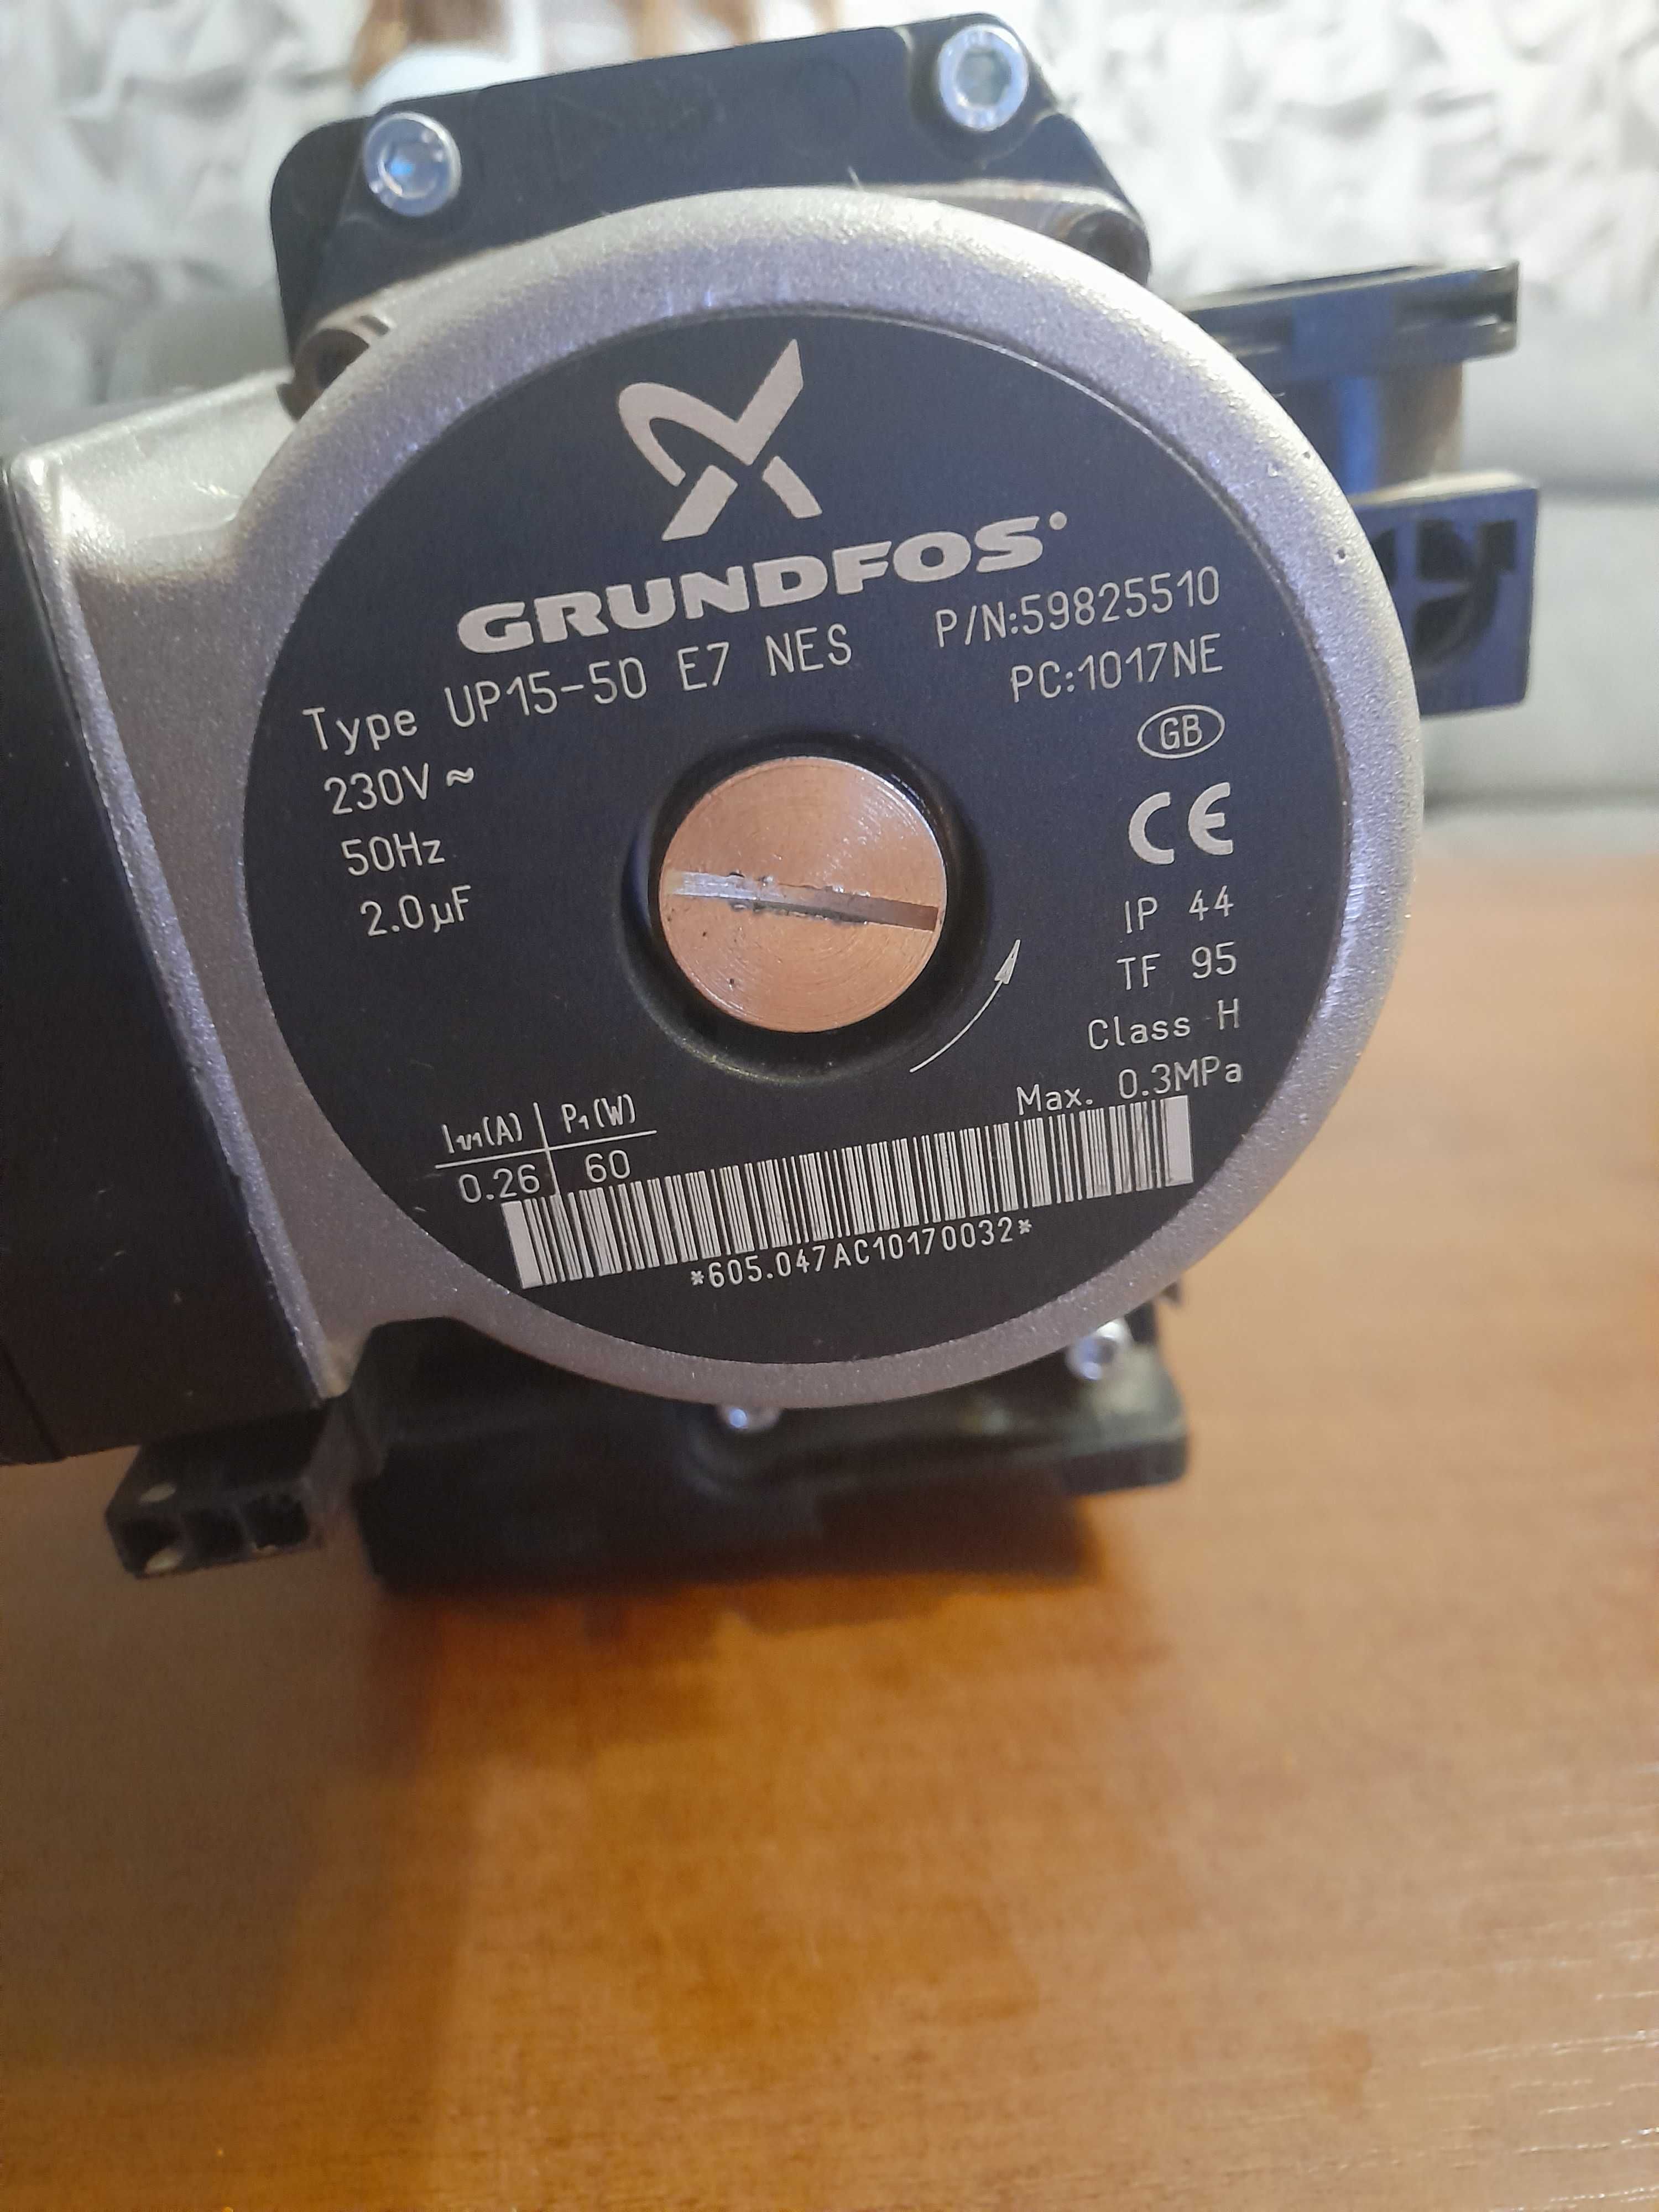 Pompa Grundfos UP 15-50 E7 NES